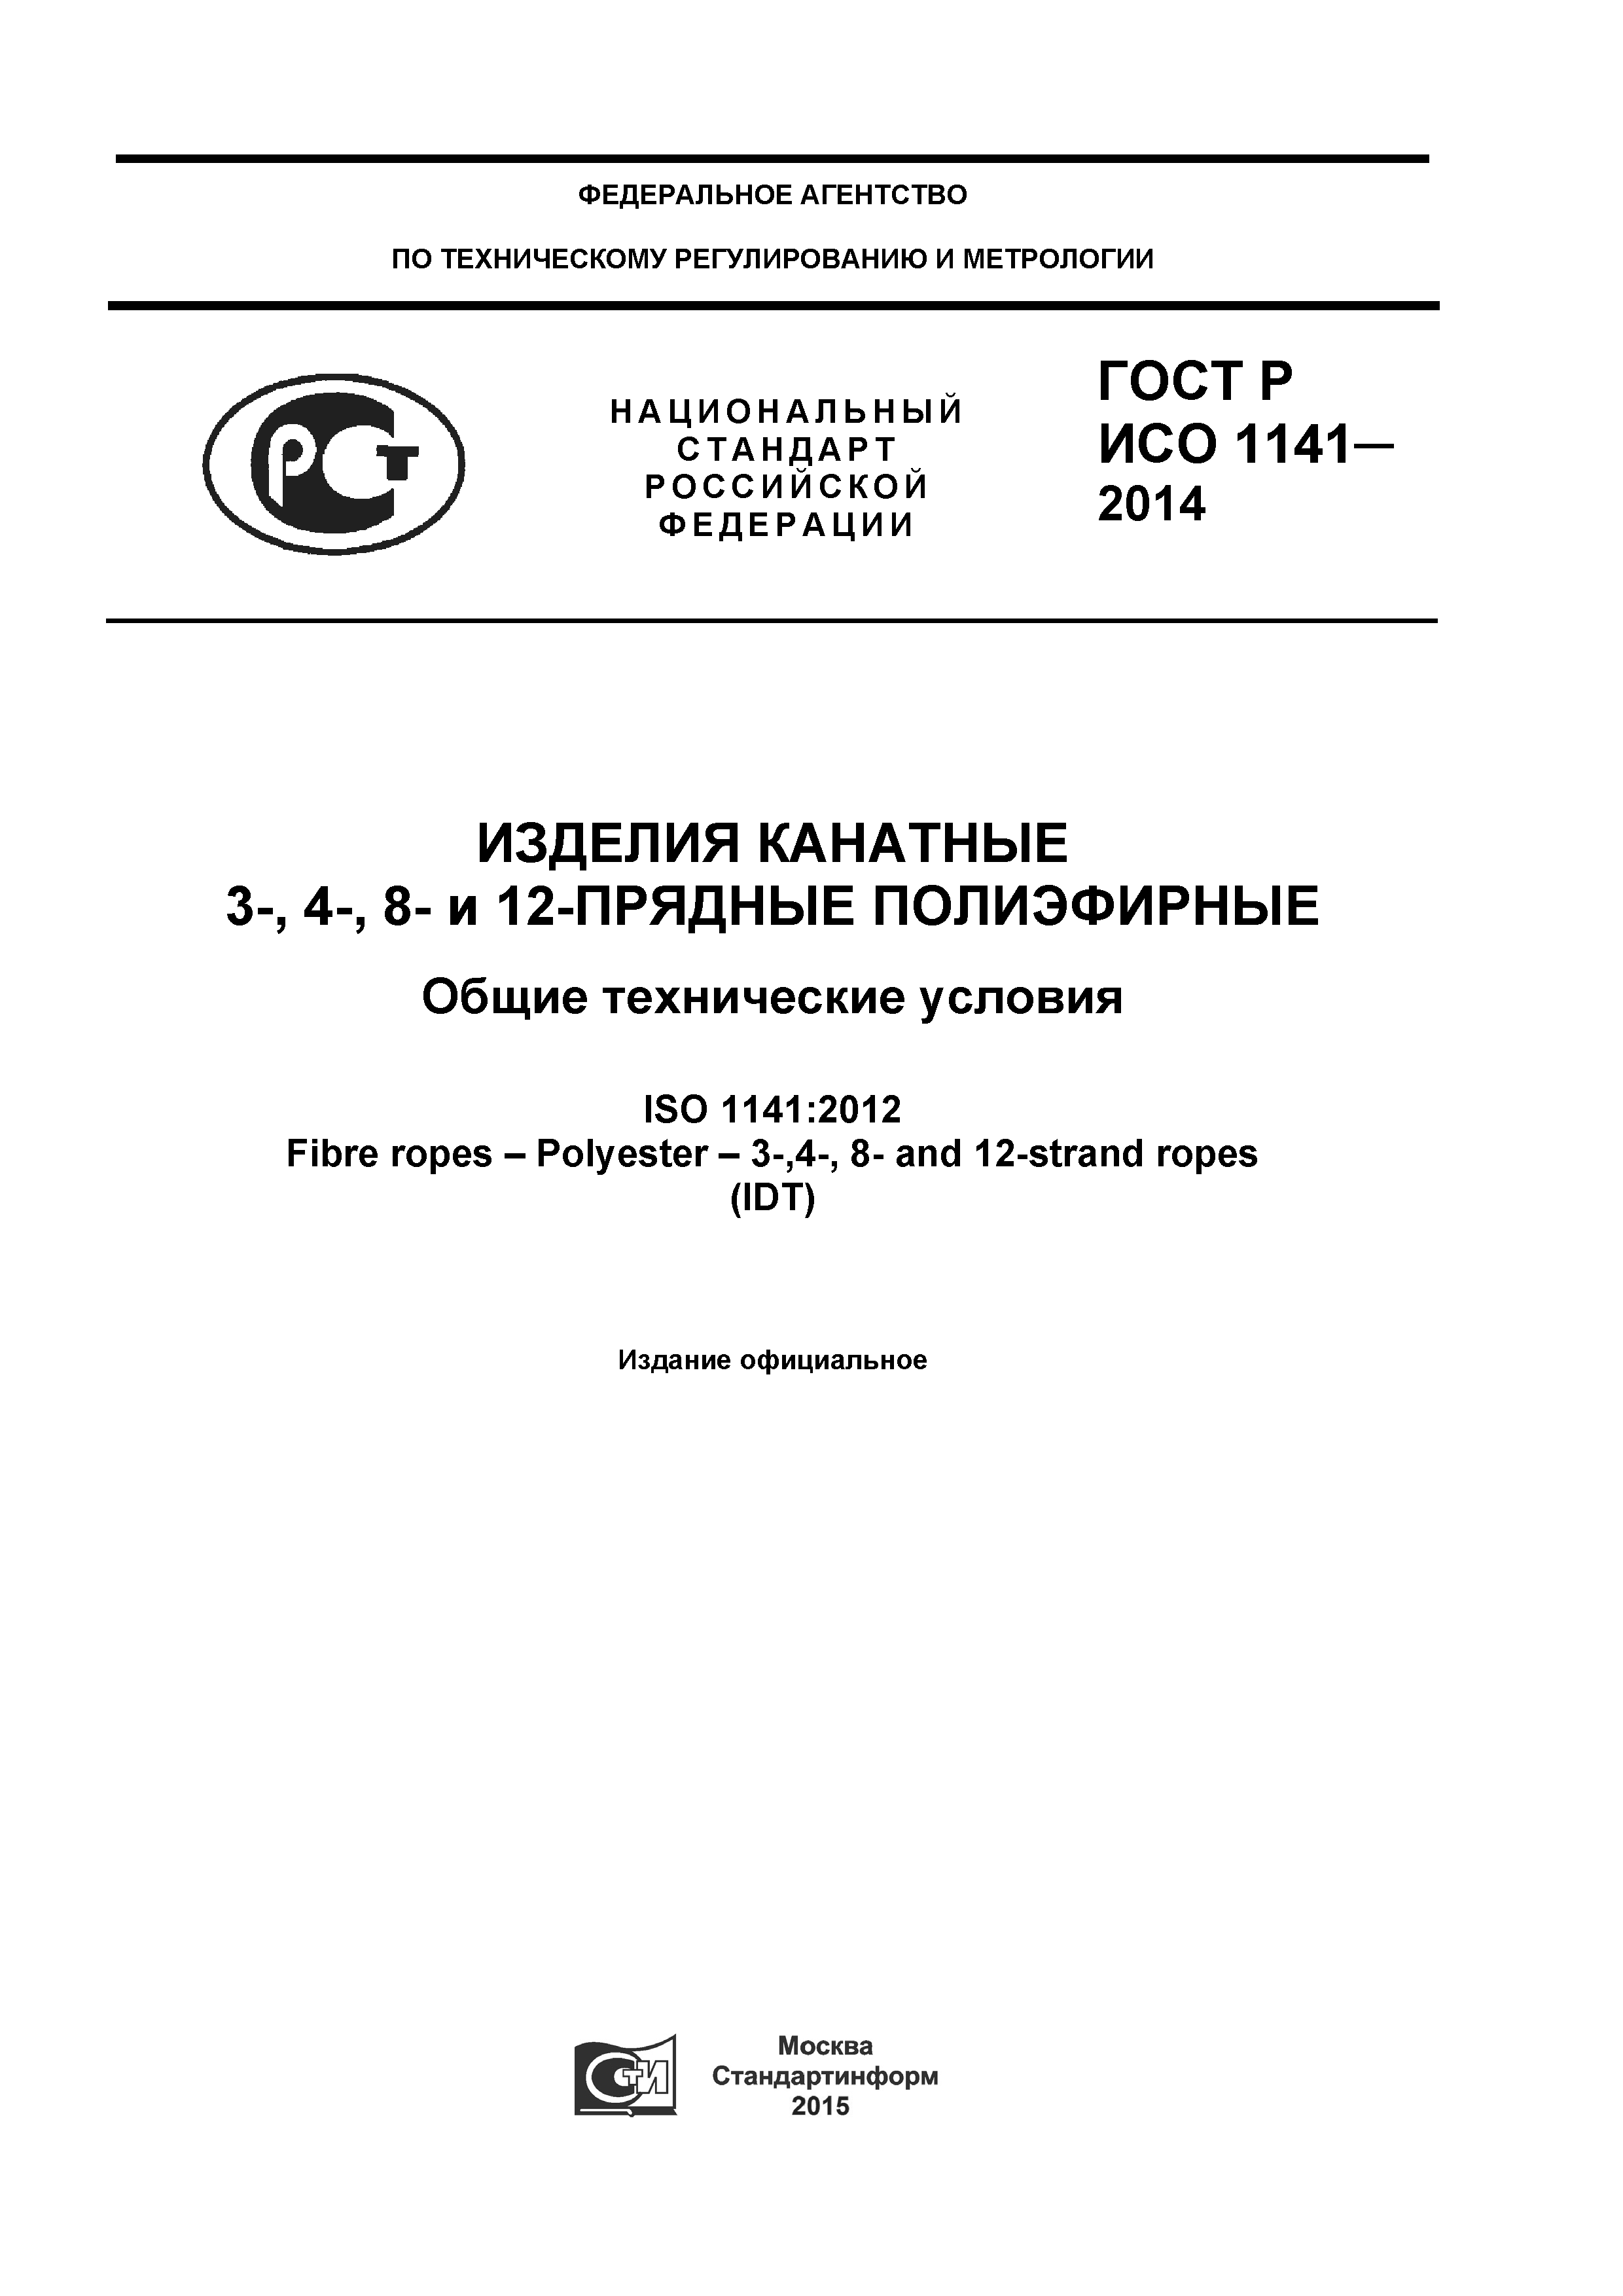 ГОСТ Р ИСО 1141-2014